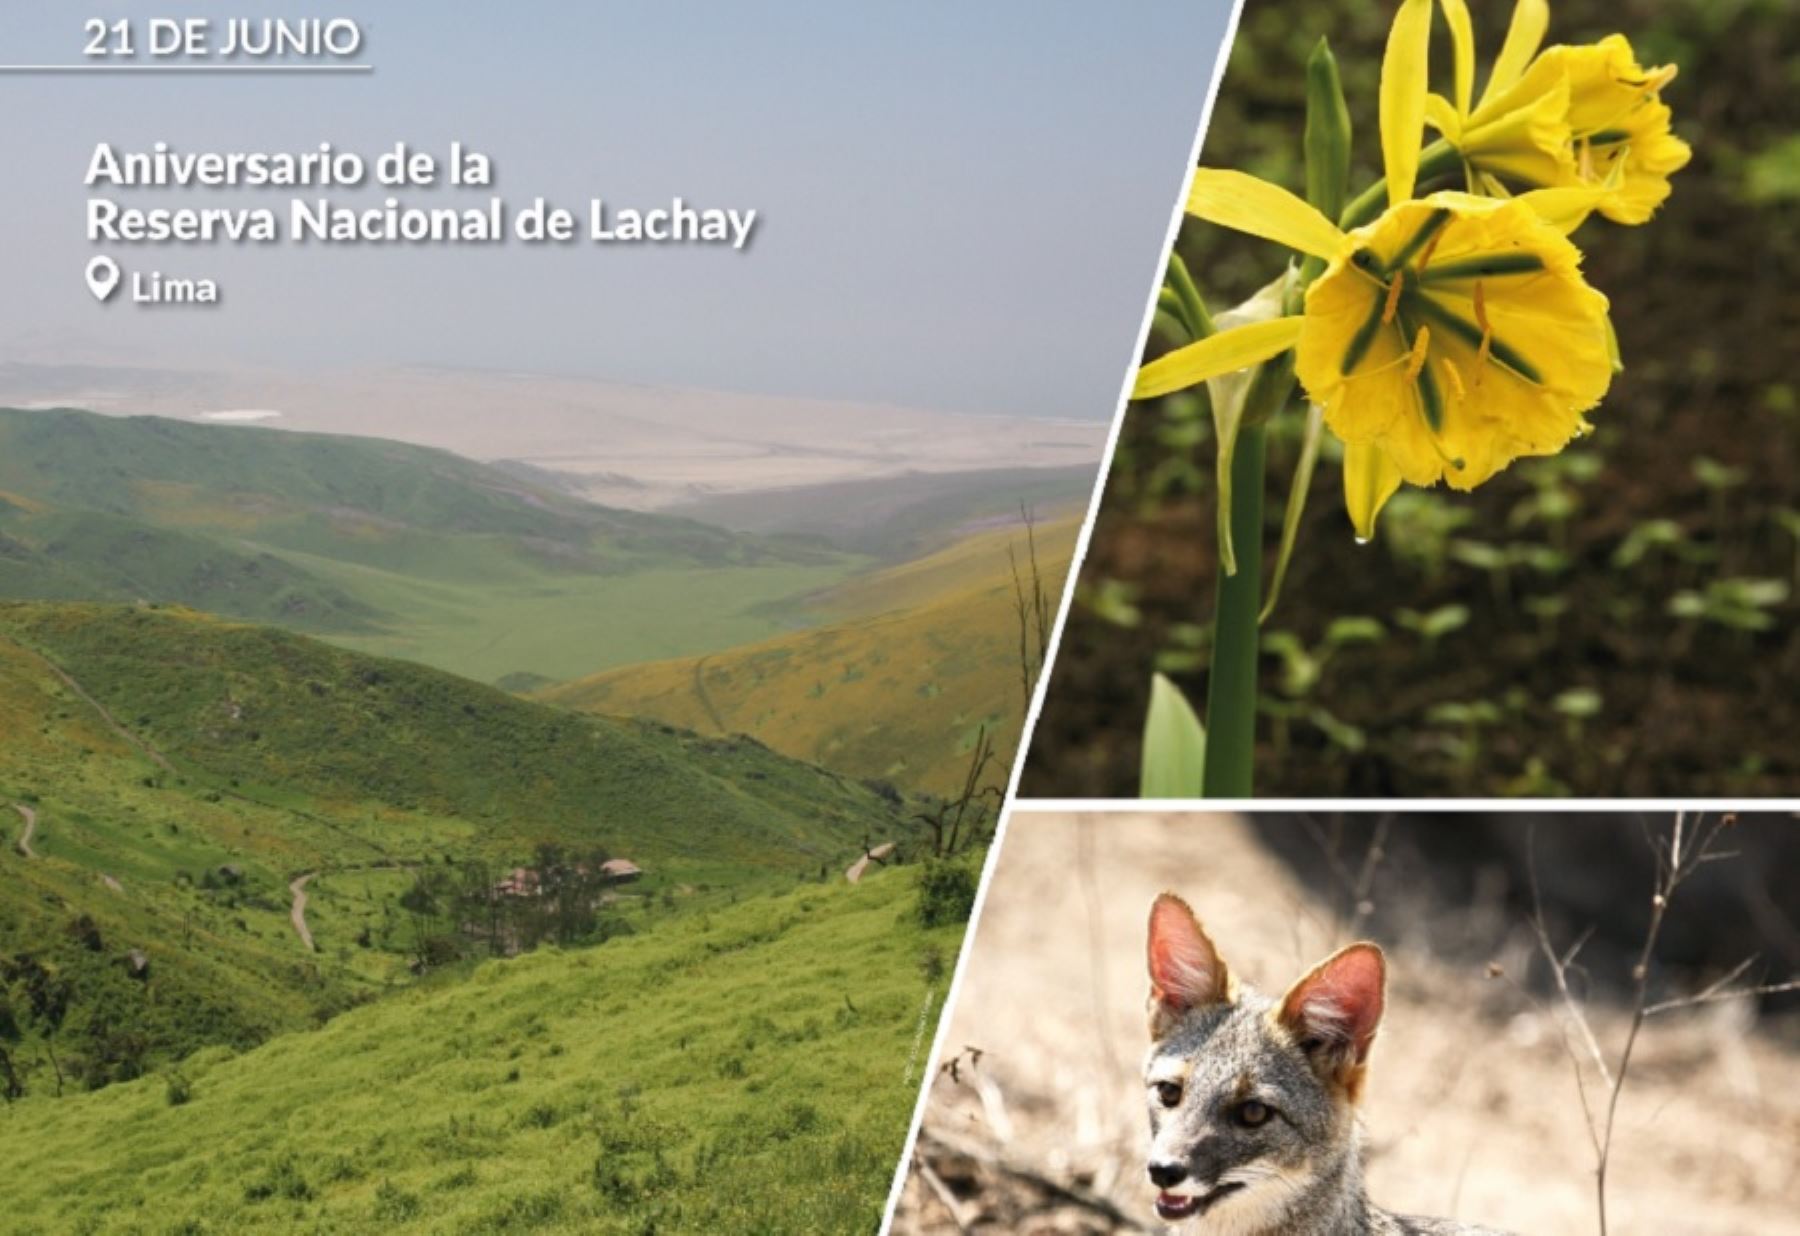 La Reserva Nacional de Lachay, un ícono de las lomas costeras del Perú, celebra hoy su 46 aniversario como área natural protegida que preserva una singular biodiversidad.